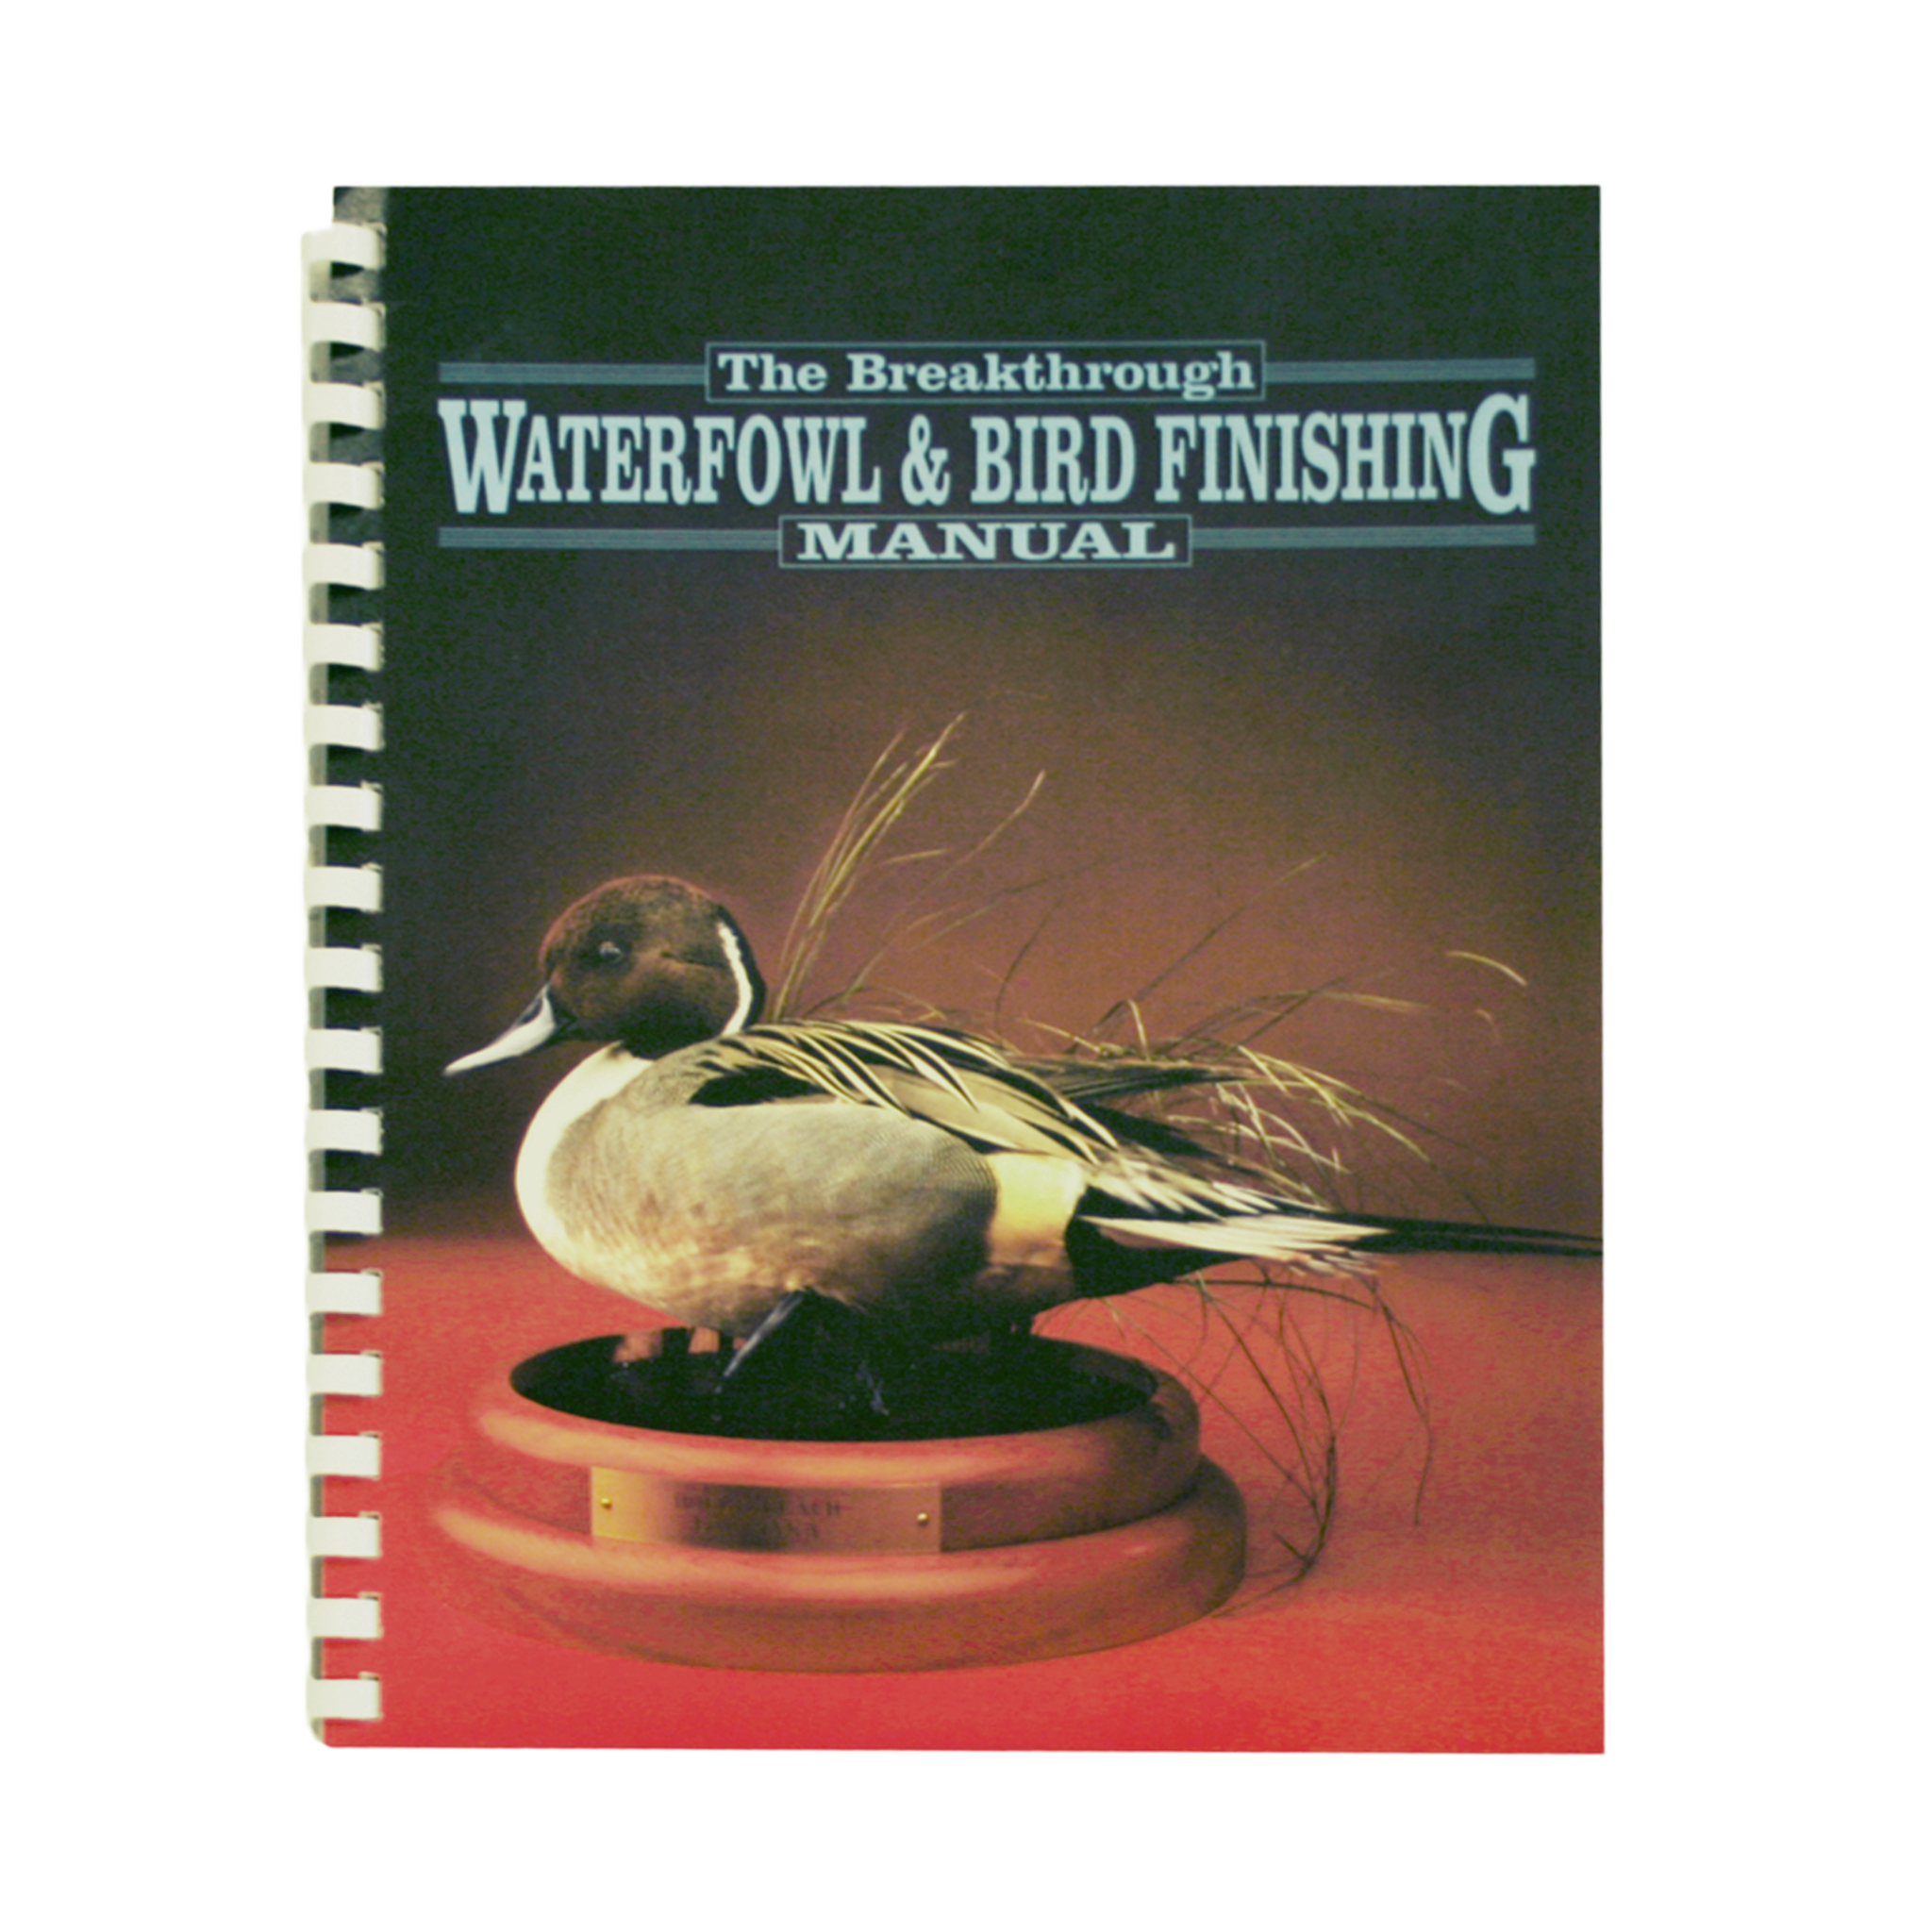 Waterfowl & Bird Finishing Manual